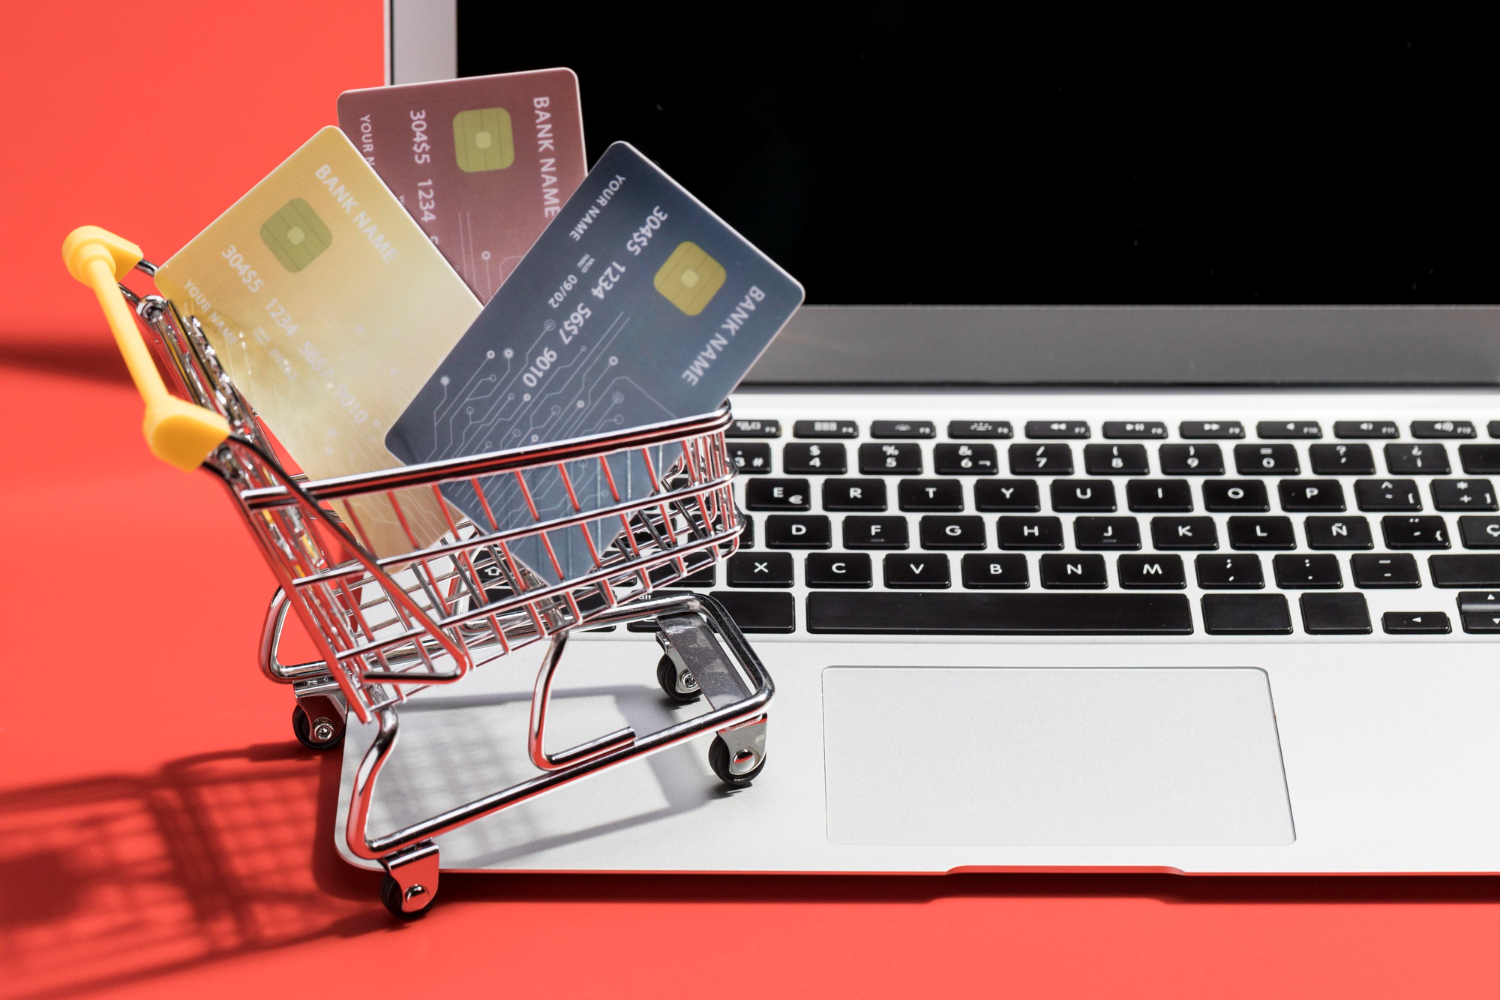 Imagem ilustrativa sobre criação de e-commerces em Curitiba, mostrando um carrinho de compras, cartões de crédito e um notebook.